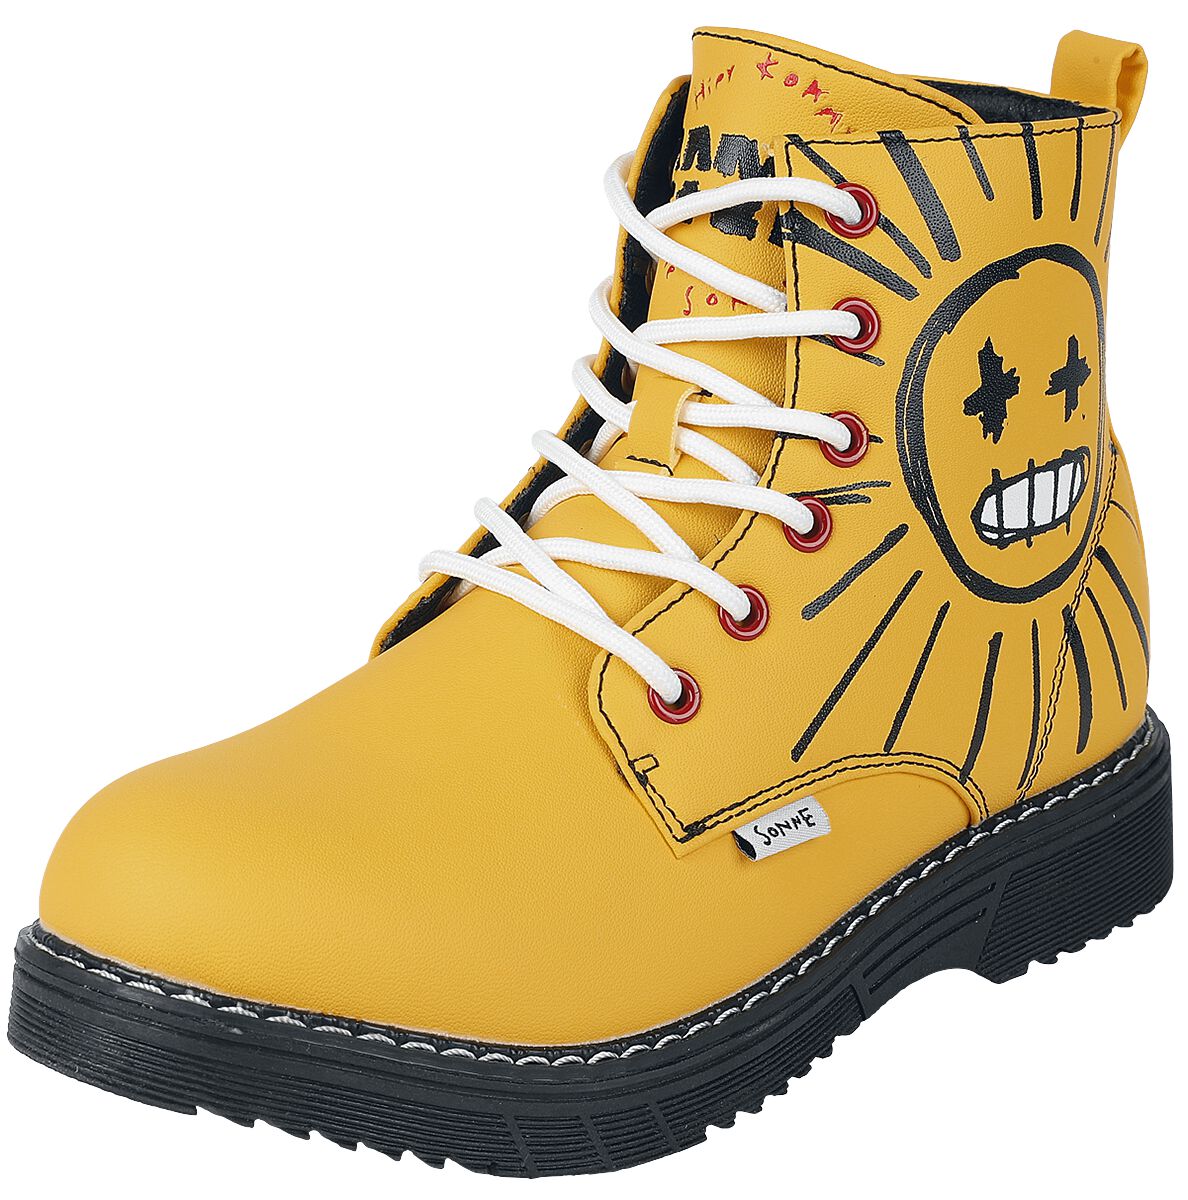 Rammstein Boot - EU37 bis EU41 - für Damen - Größe EU39 - gelb  - Lizenziertes Merchandise!